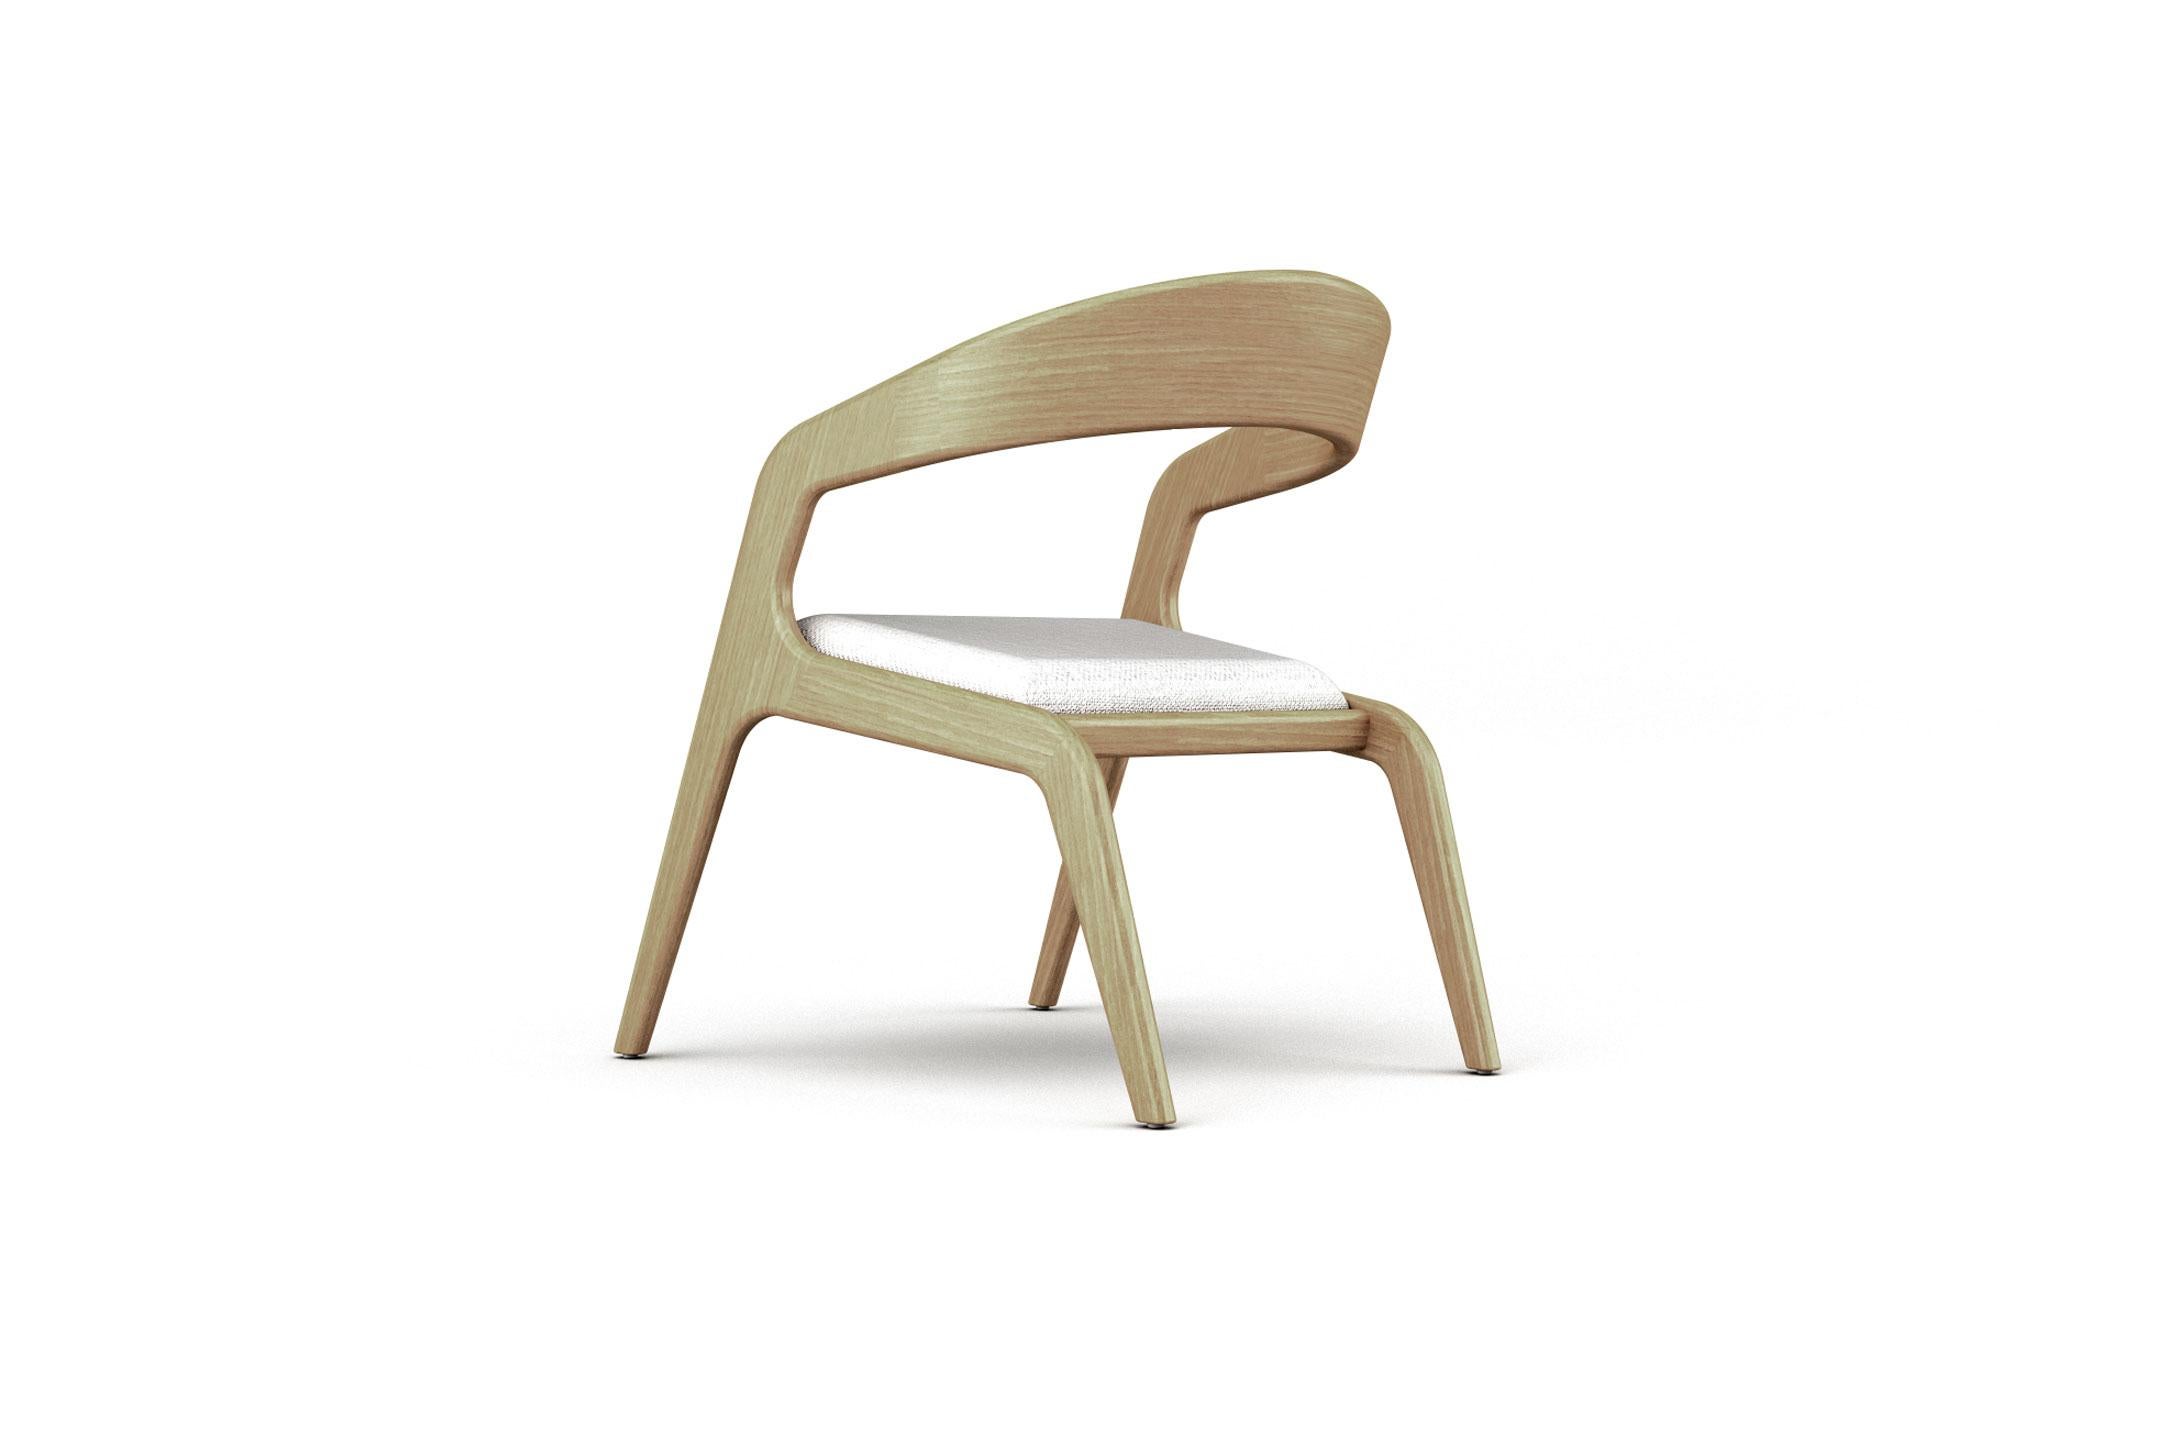 Der Aura Armlehnstuhl kombiniert eine minimalistische und ätherische Form in einem auffälligen Design. Seine Struktur besteht aus gebogenem Massivholz mit einem gepolsterten Sitz, der von unserem Team erfahrener Handwerker auf Bestellung angepasst